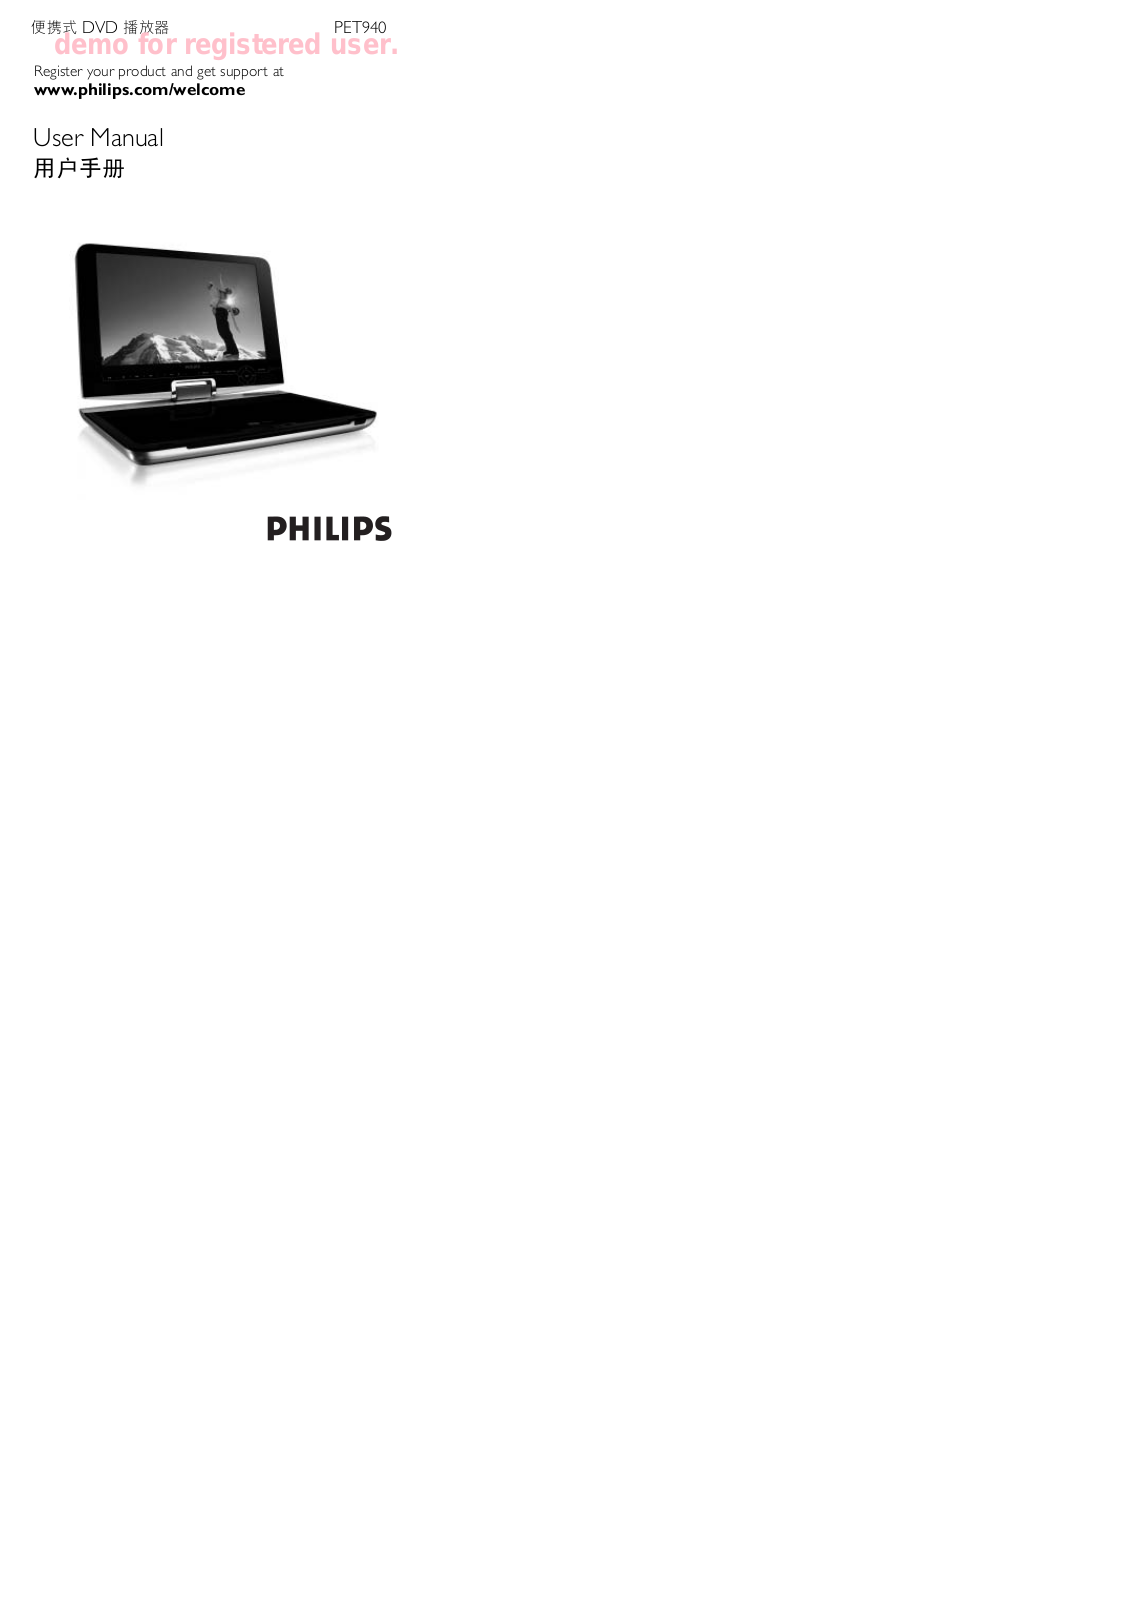 Philips PET940/93 User Manual